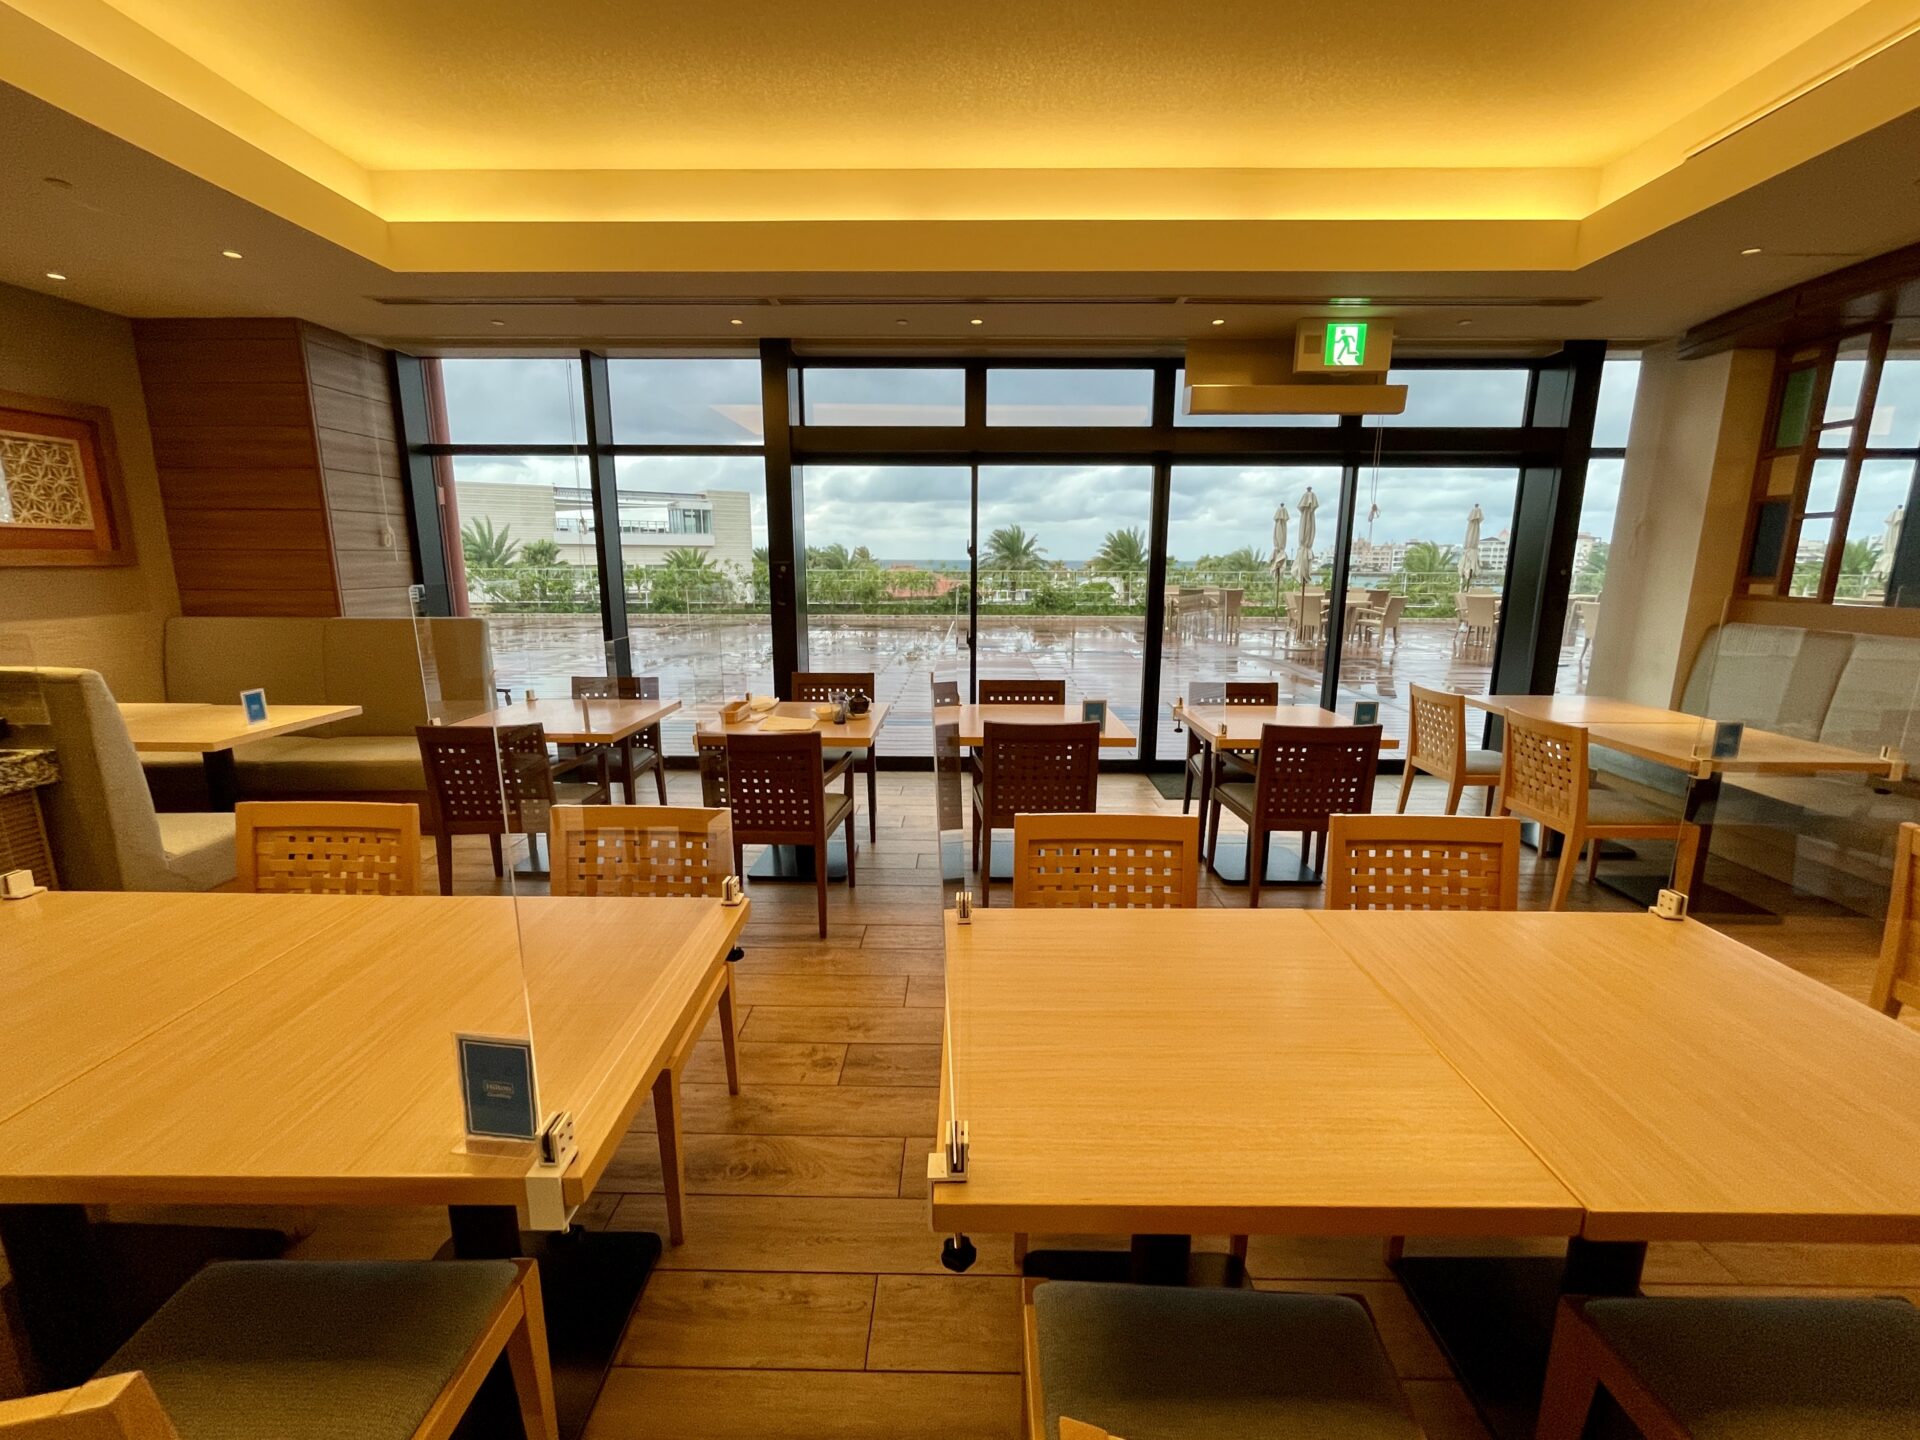 ヒルトン沖縄北谷リゾート 朝食会場 テーブル席の様子